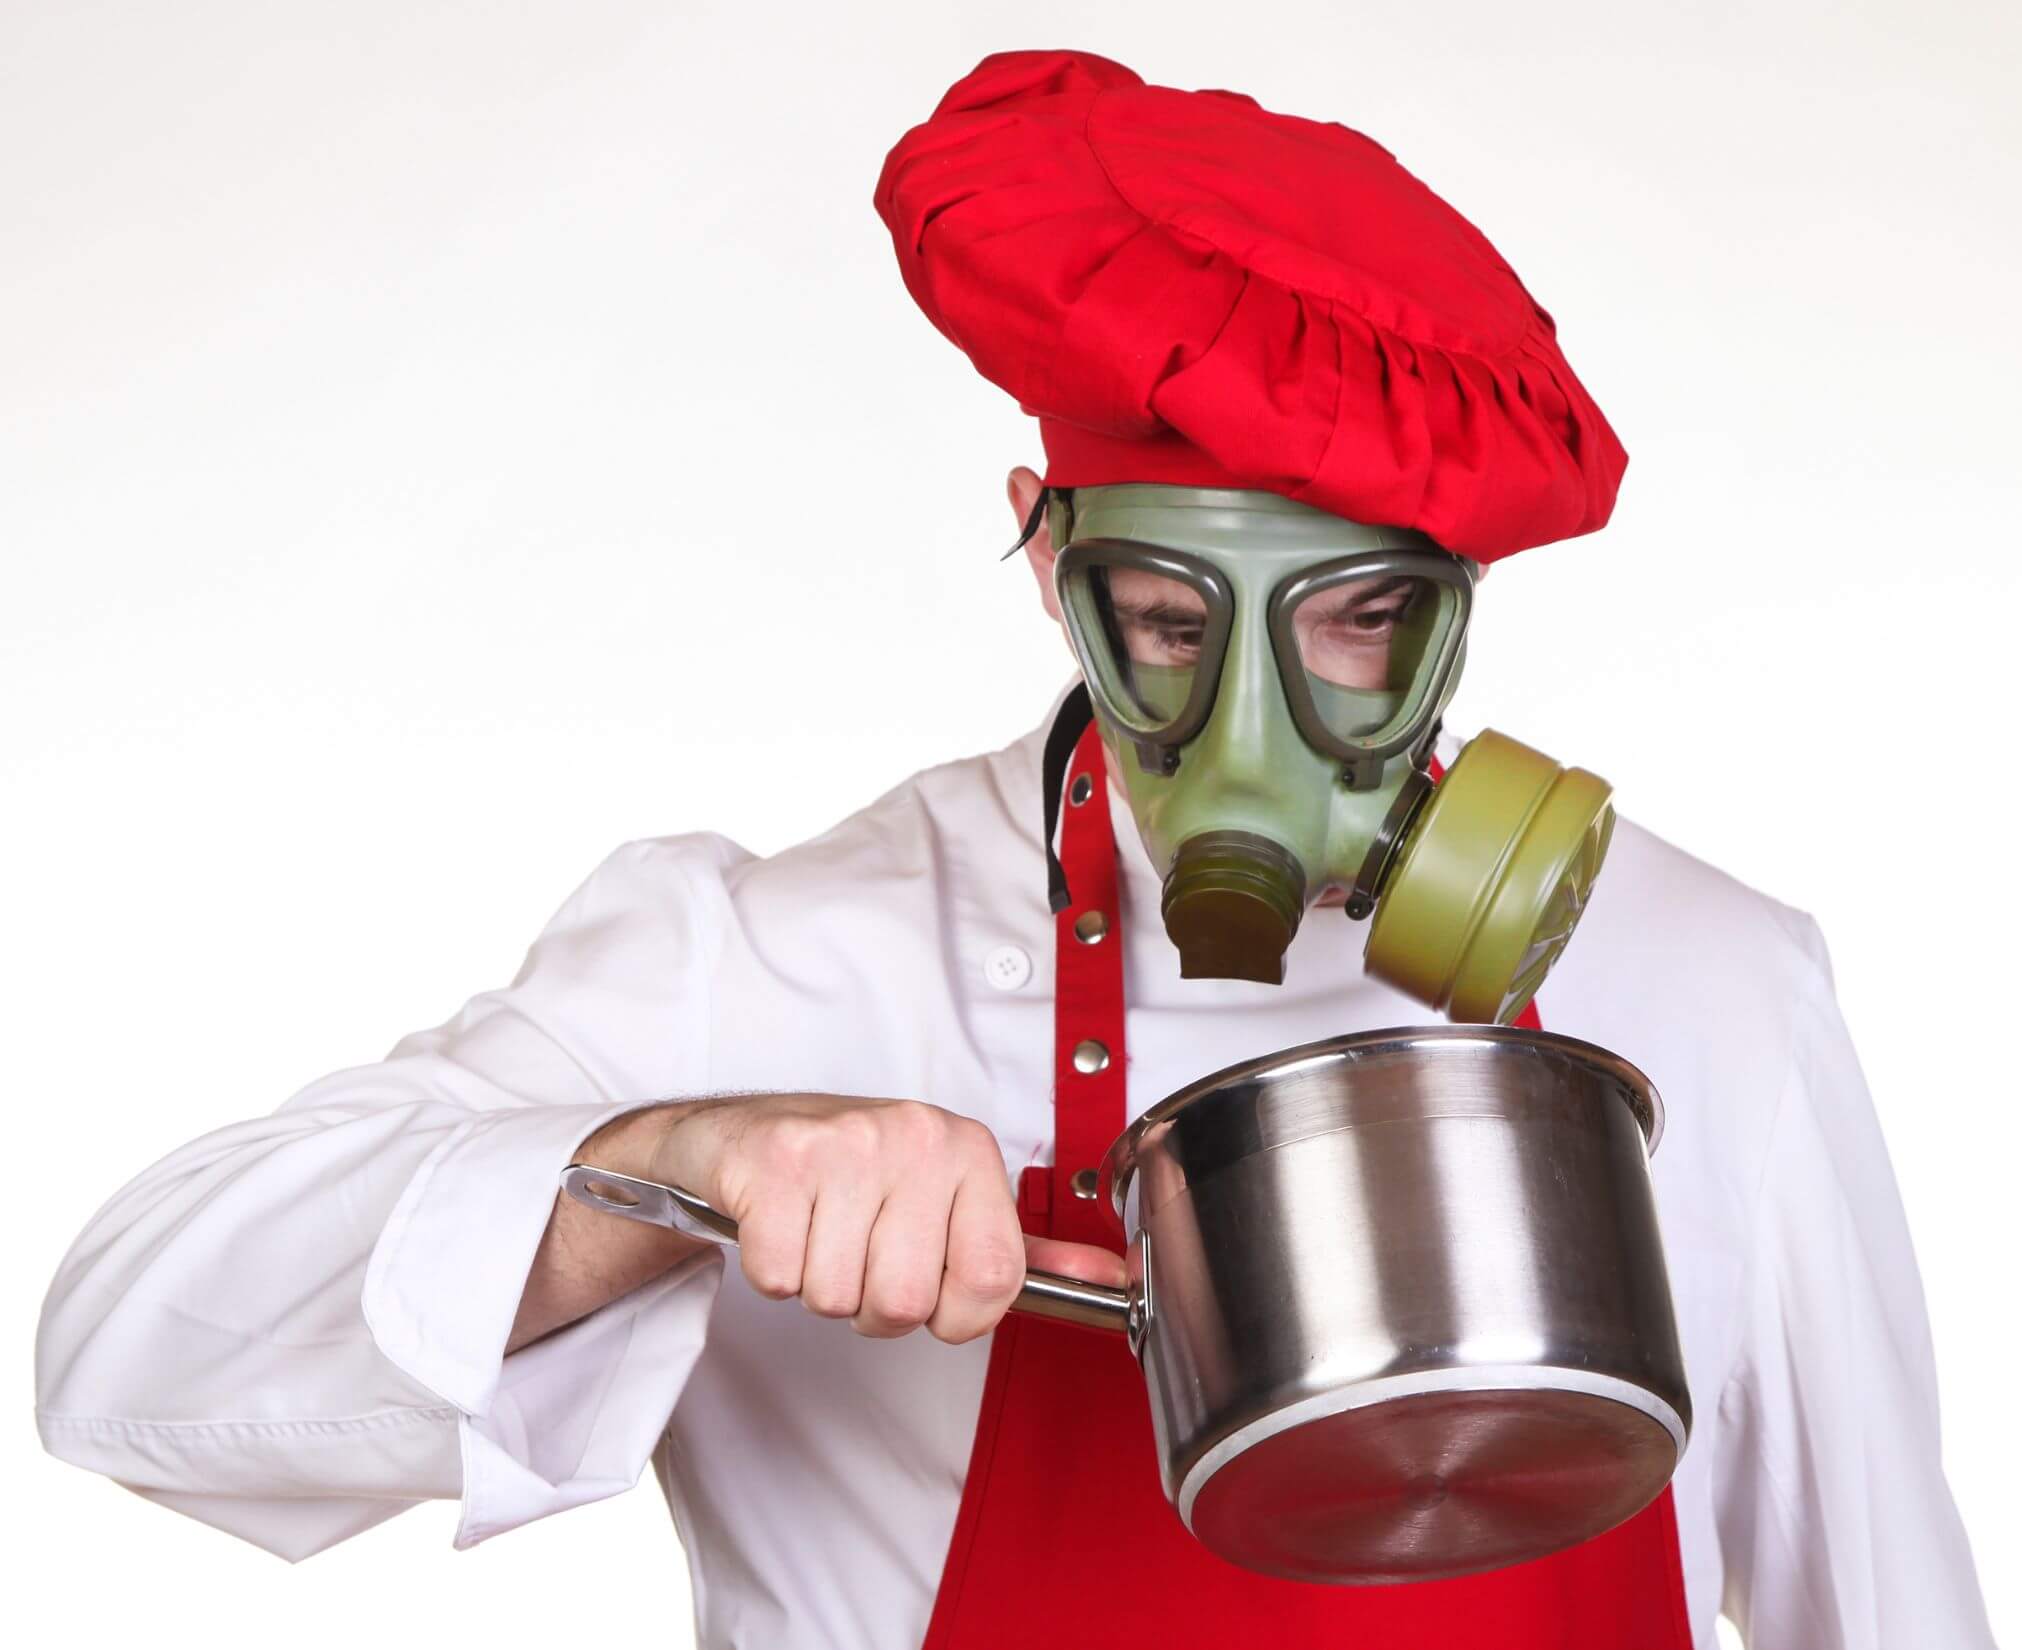 Mann schaut mit Gasmaske in einen Topf, um sich vor Schwermetallen zu schützen